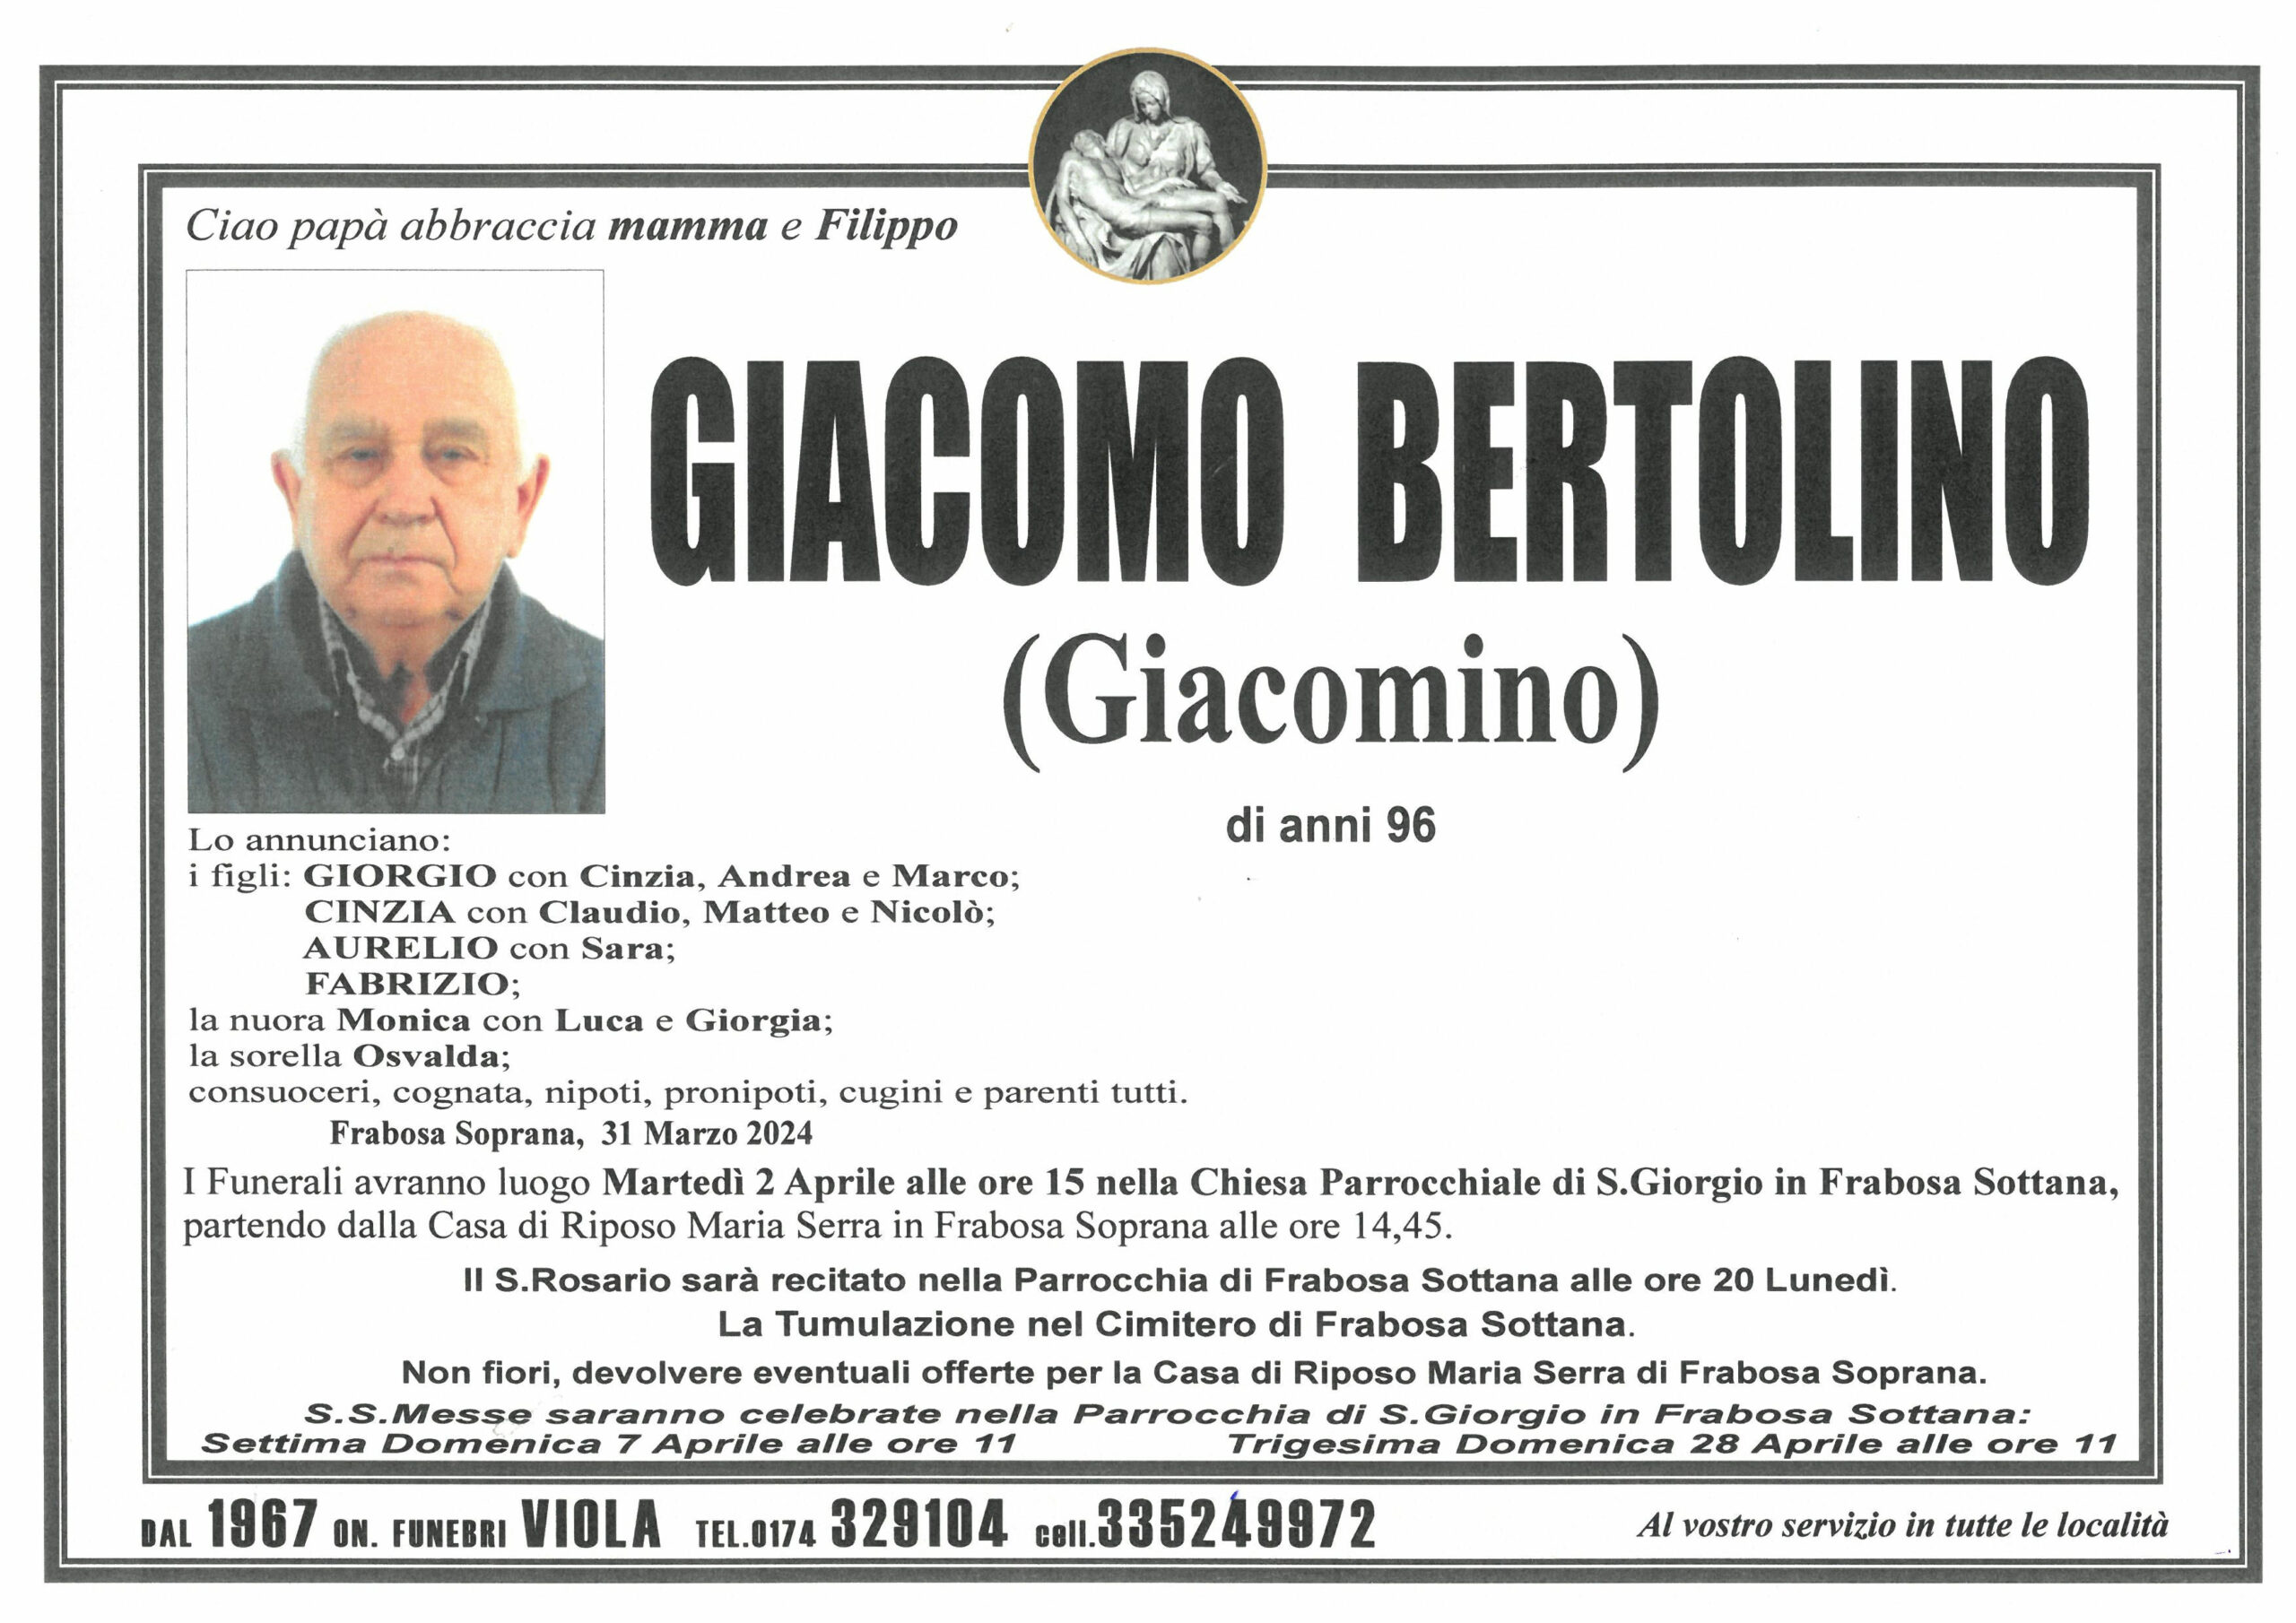 Giacomo Bertolino